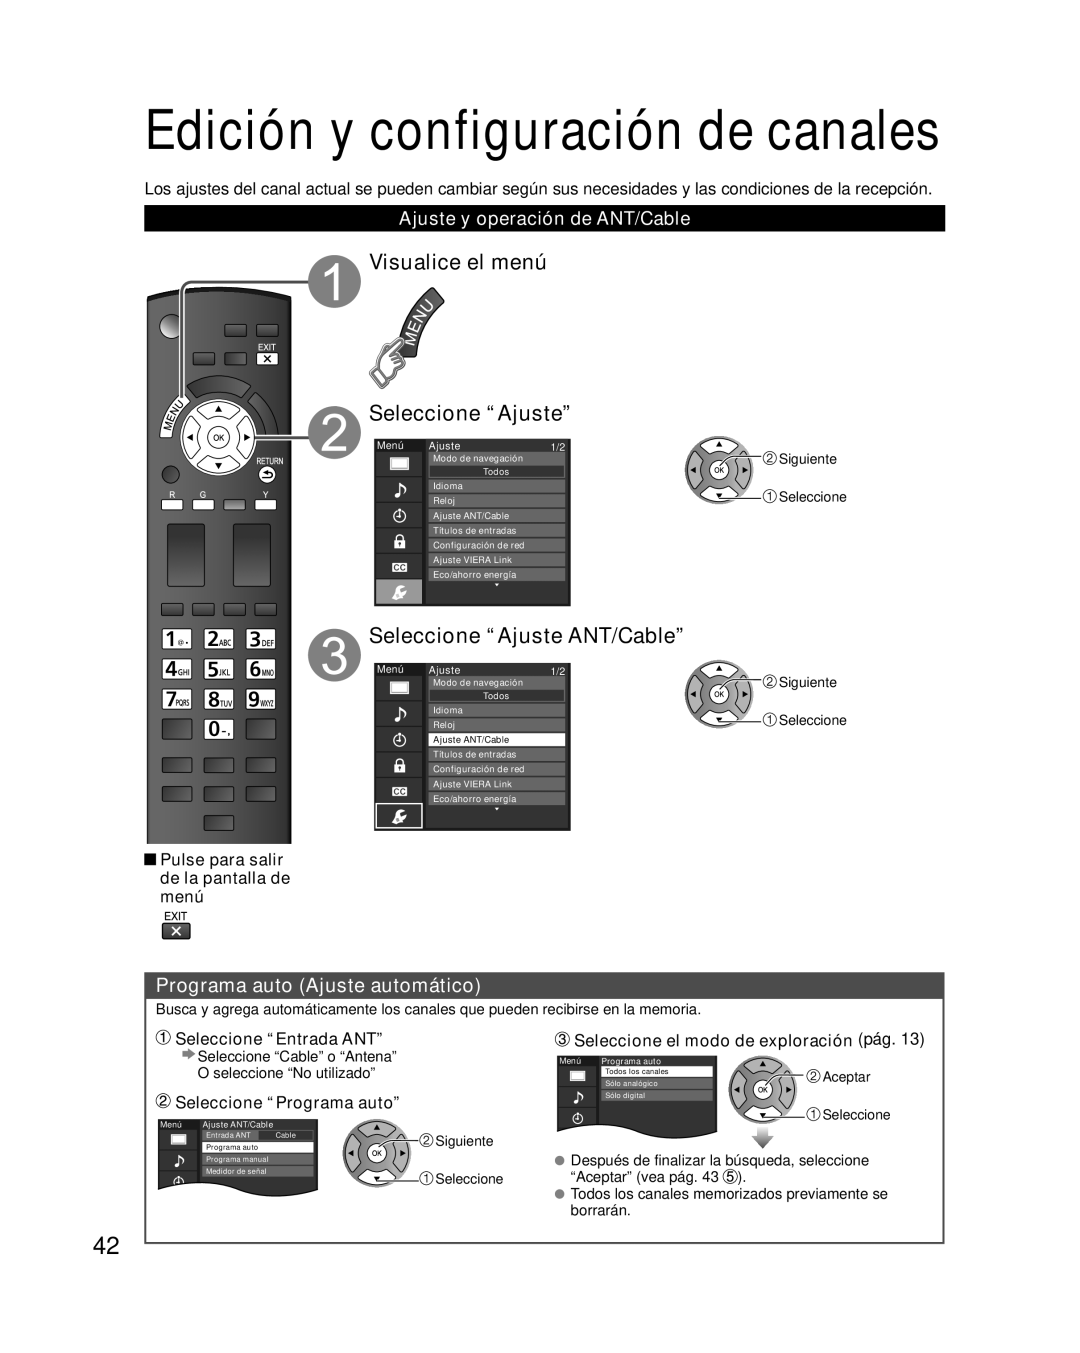 Panasonic TC-L37E3 Edición y configuración de canales, Visualice el menú Seleccione “Ajuste”, Seleccione “Entrada ANT” 